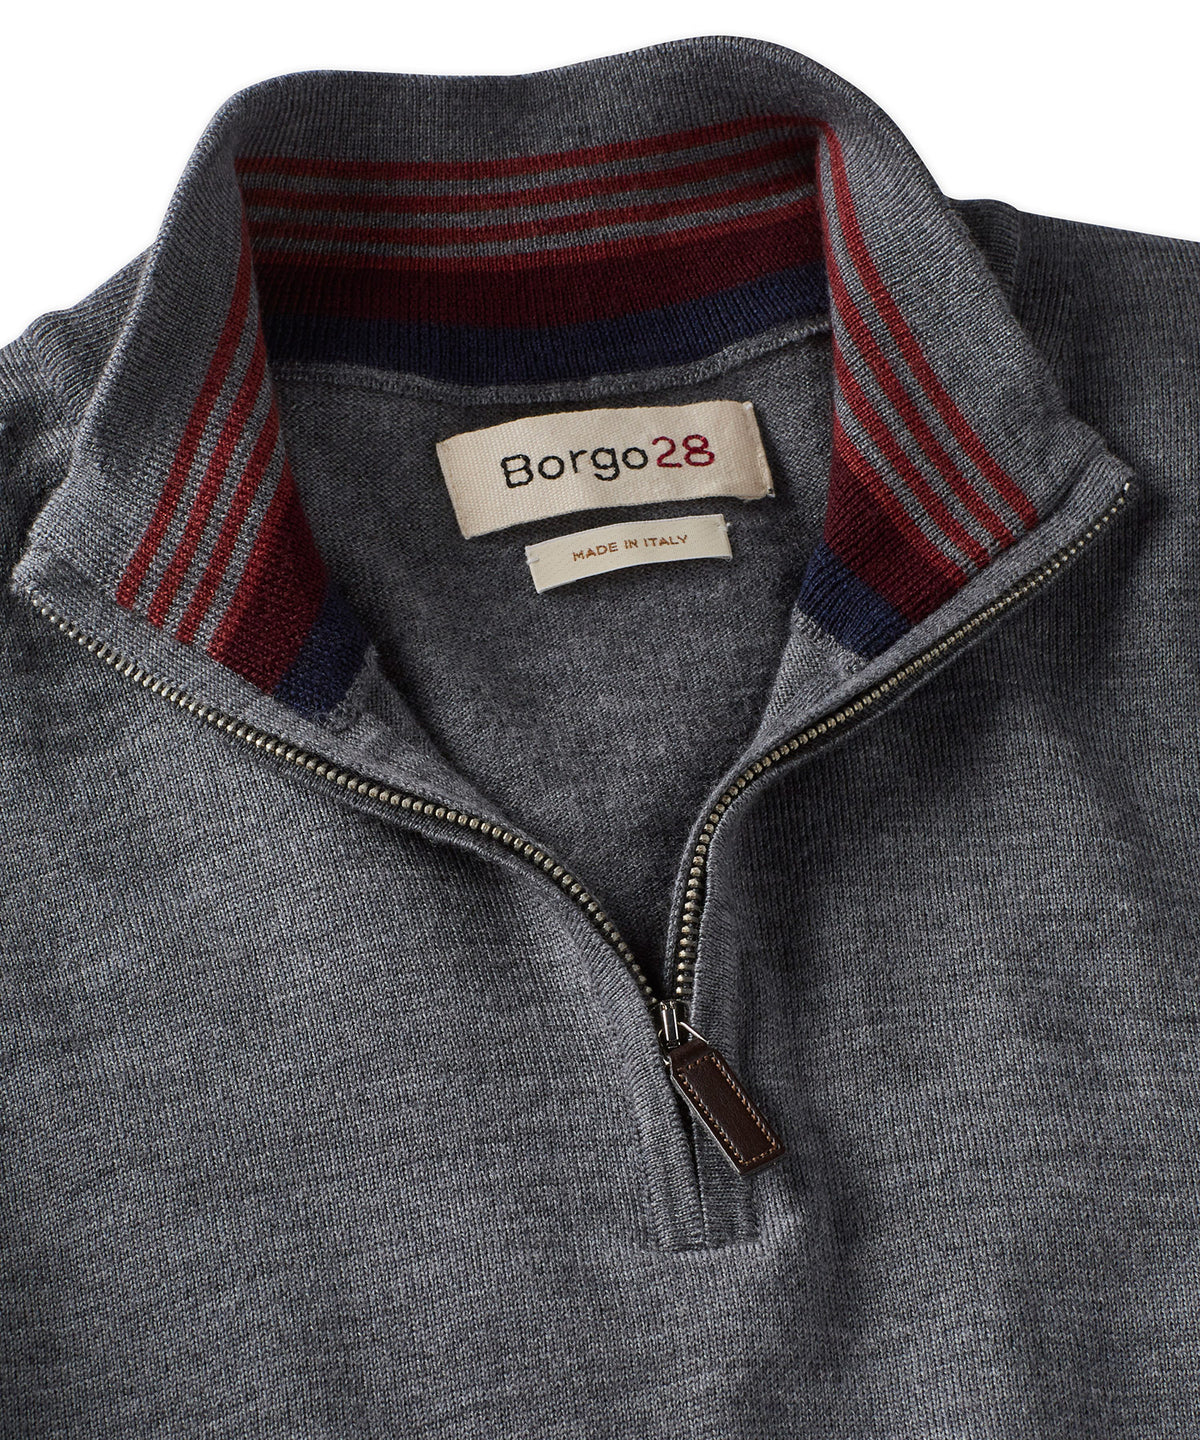 Merino Wool Quarter-Zip Sweater